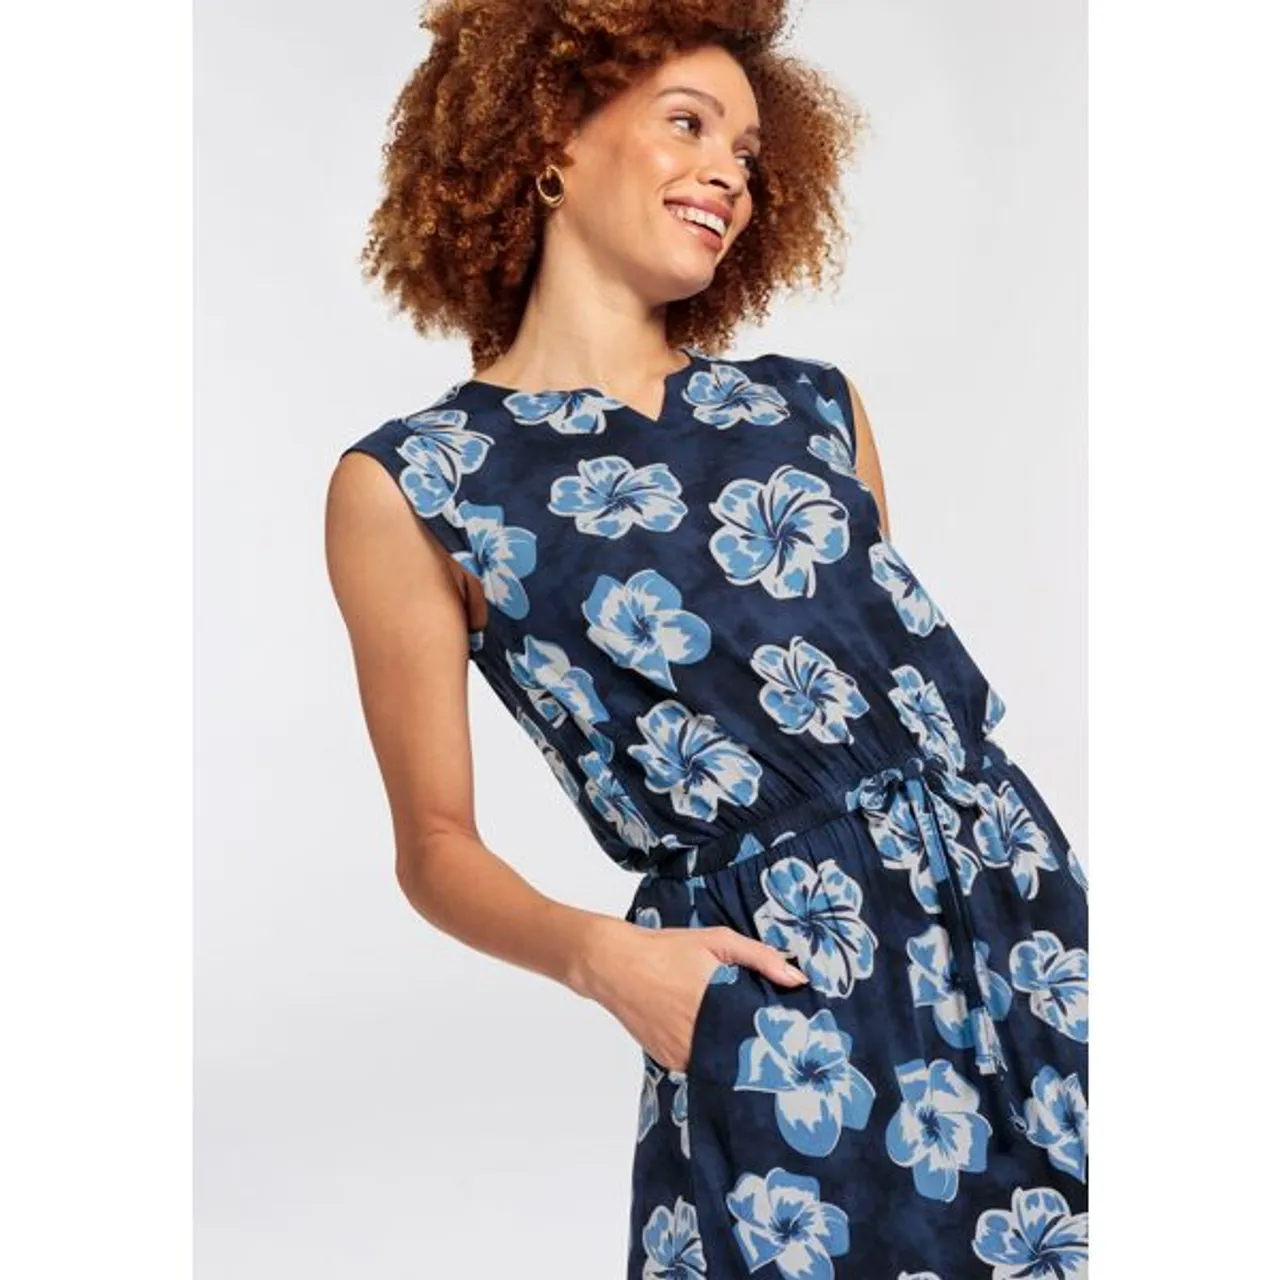 Maxikleid BOYSEN'S Gr. 48, N-Gr, blau (marine) Damen Kleider Strandkleider mit maritimen Floral-Alloverdruck - NEUE KOLLEKTION